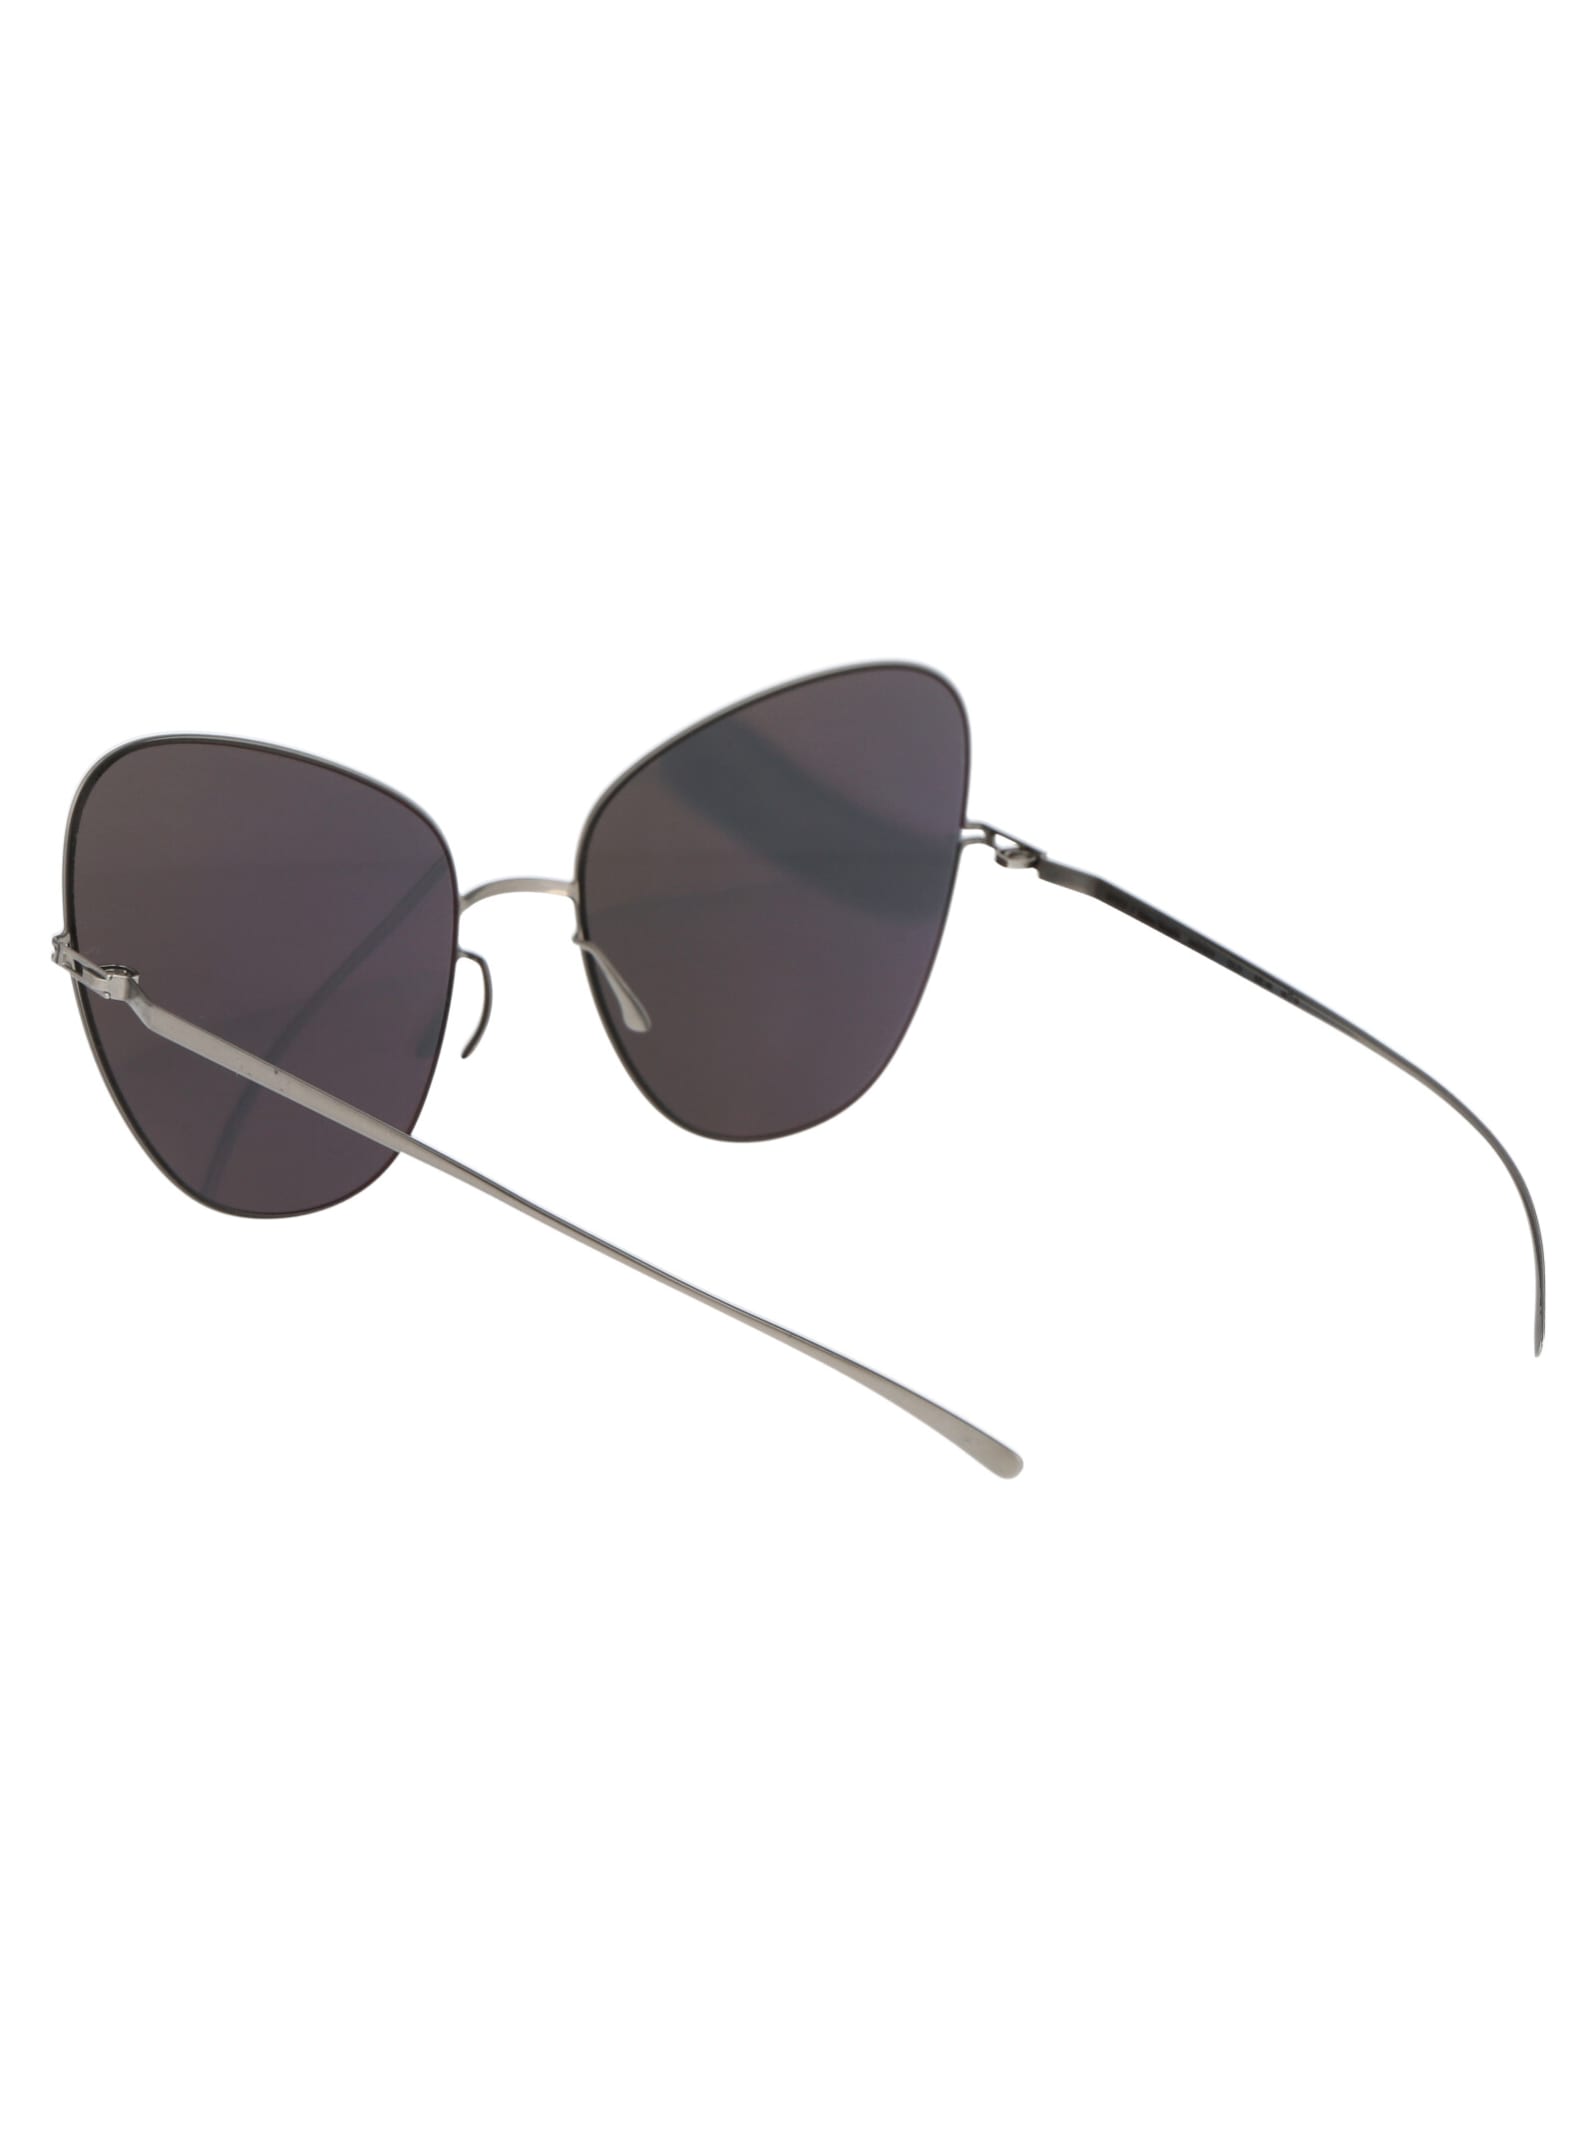 Shop Mykita Mmesse018 Sunglasses In 187 E1 Silver Silver Flash